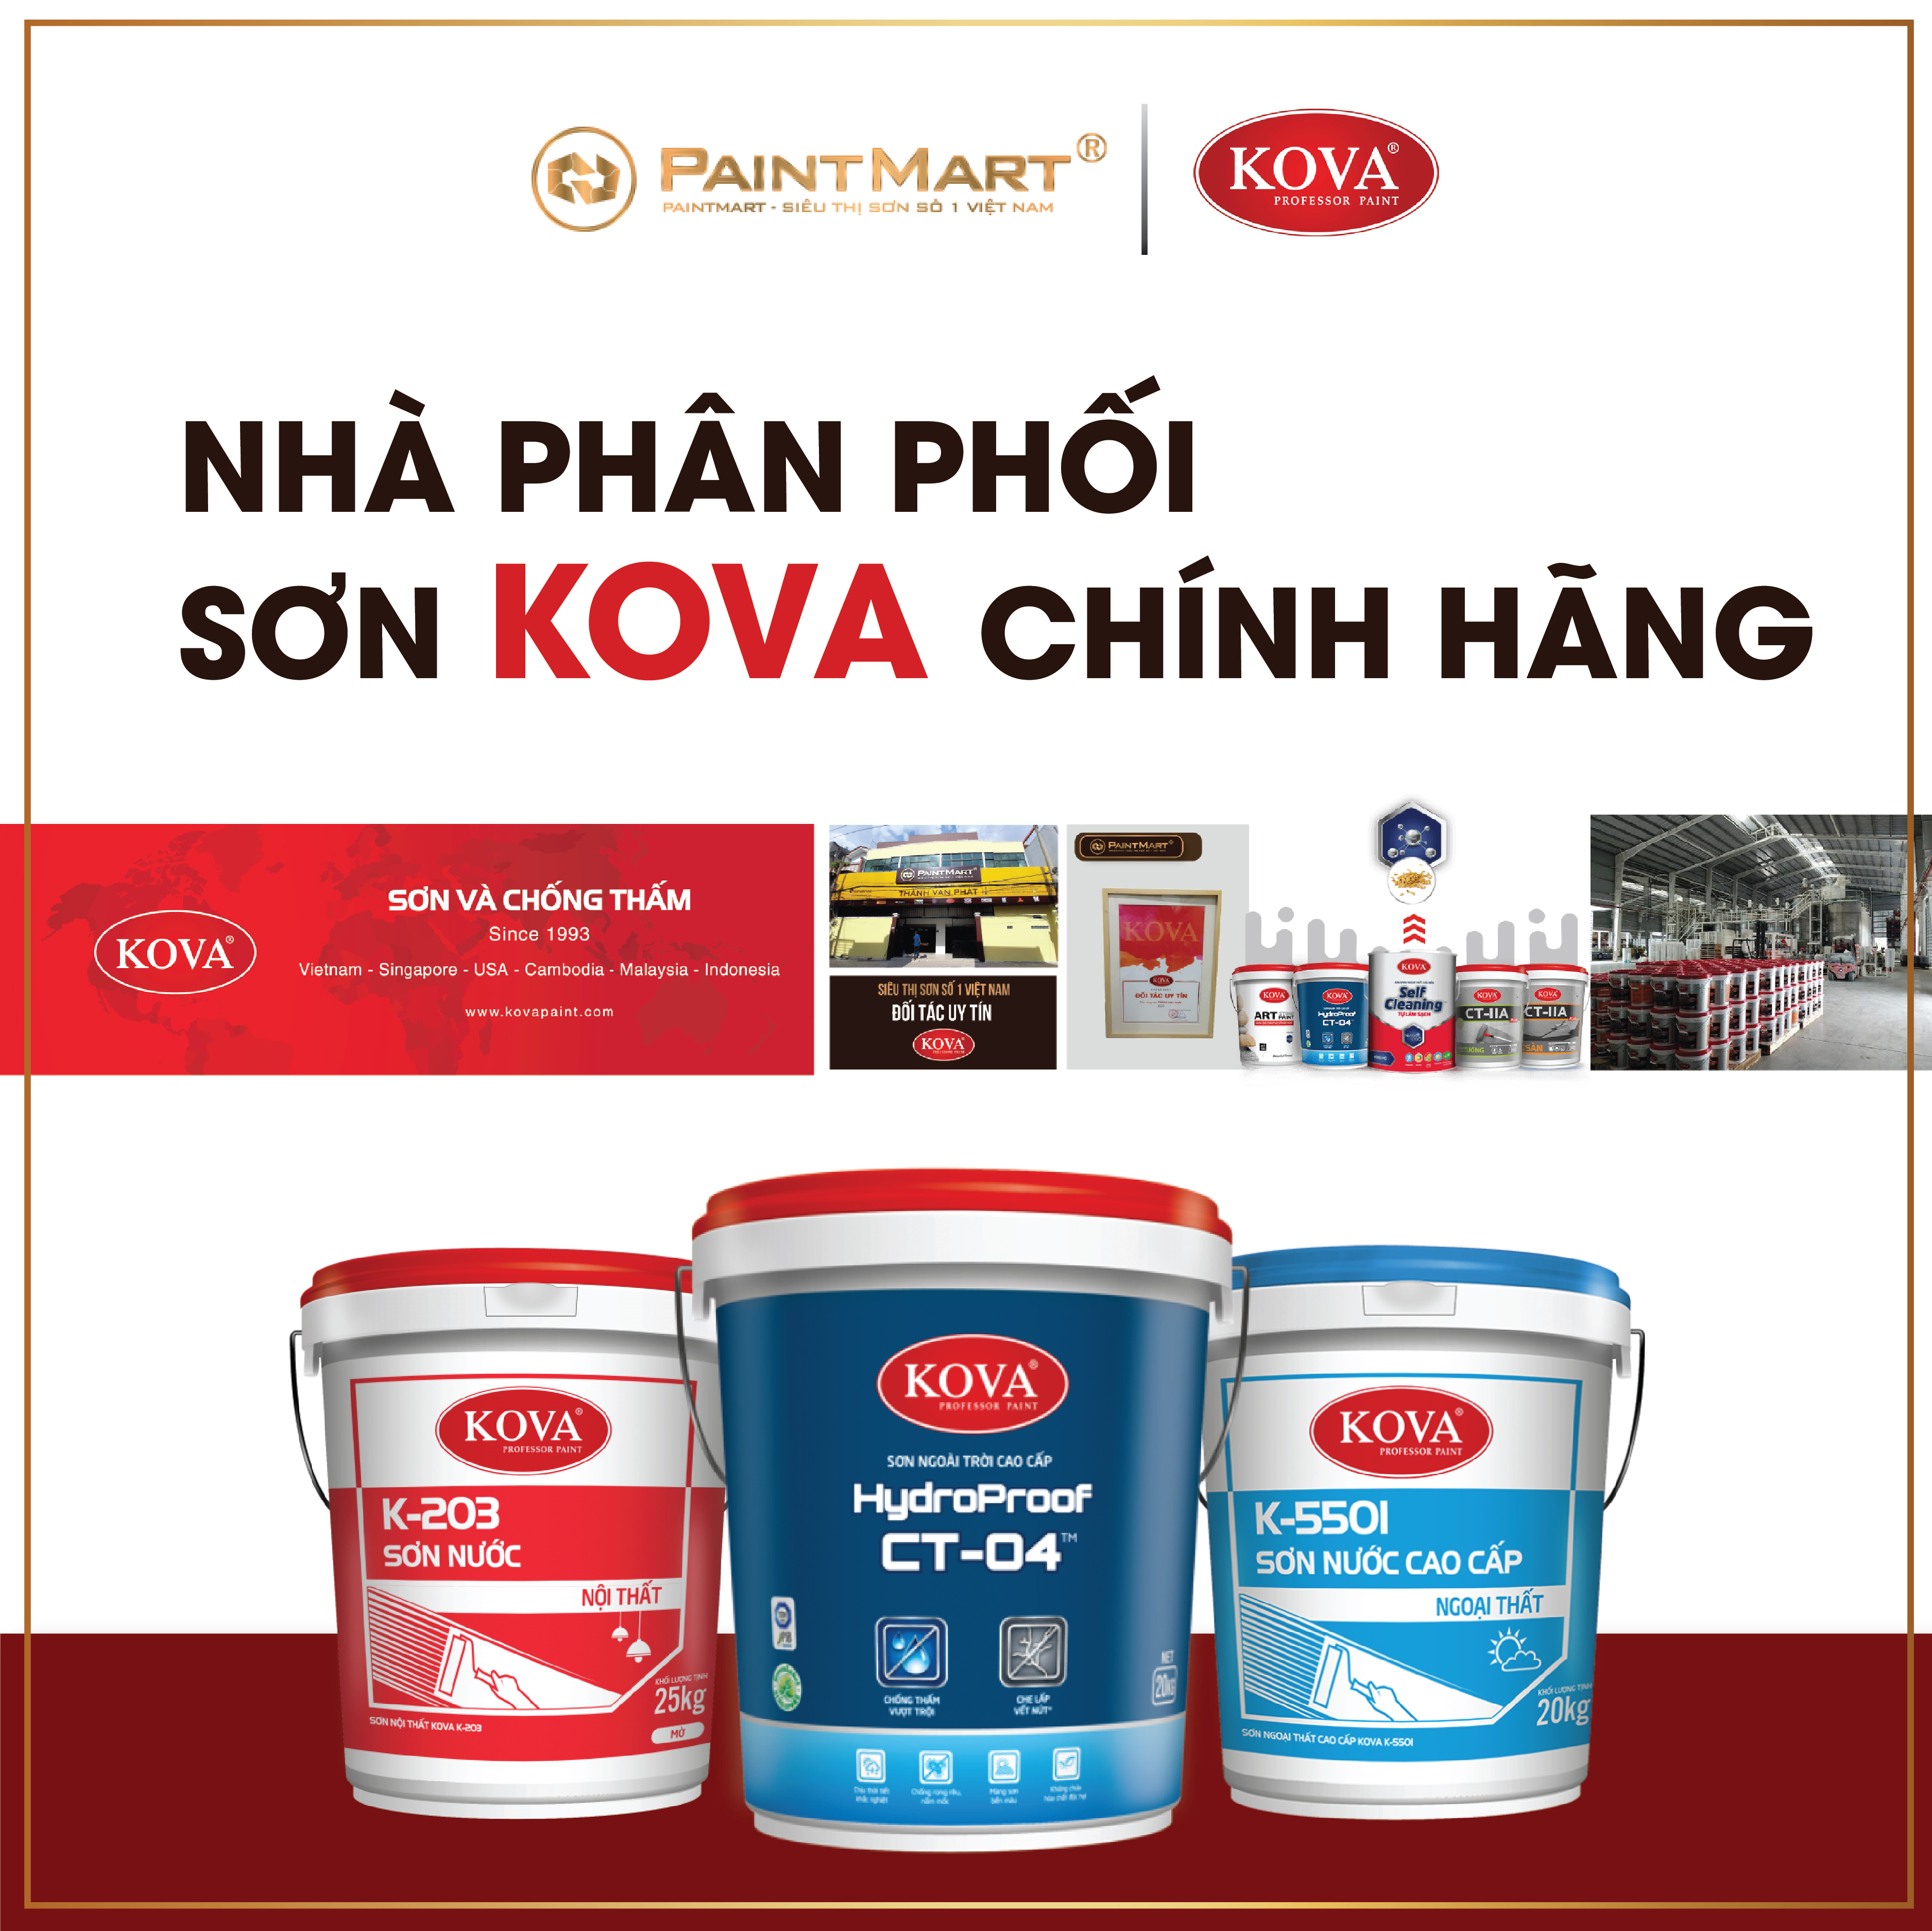 Đến với nhà phân phối sơn Kova và bạn sẽ được tư vấn và cung cấp sản phẩm chất lượng nhất. Chúng tôi có đầy đủ các loại sơn cho nhiều mục đích khác nhau.